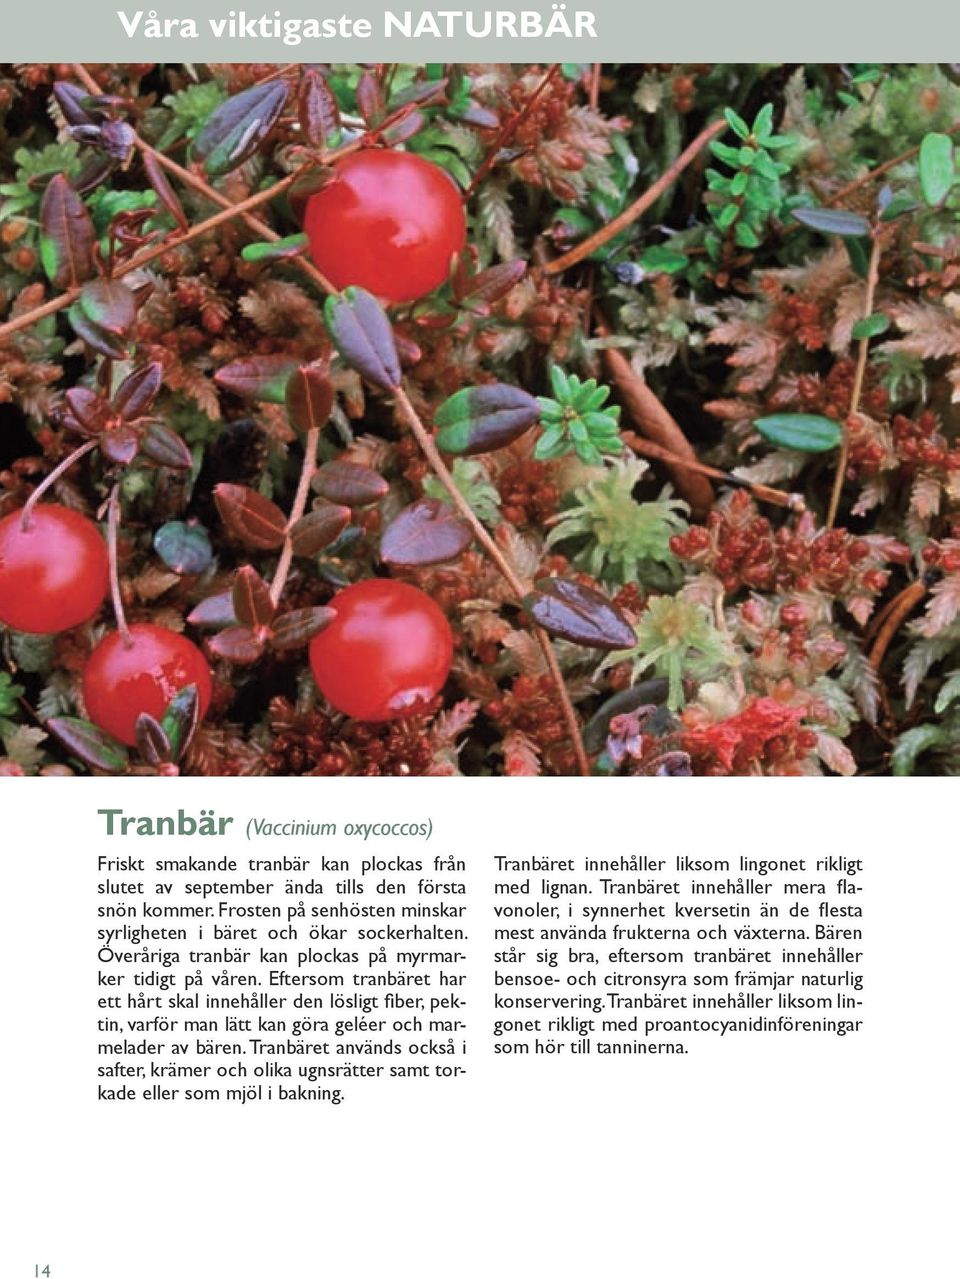 Eftersom tranbäret har ett hårt skal innehåller den lösligt fiber, pektin, varför man lätt kan göra geléer och marmelader av bären.